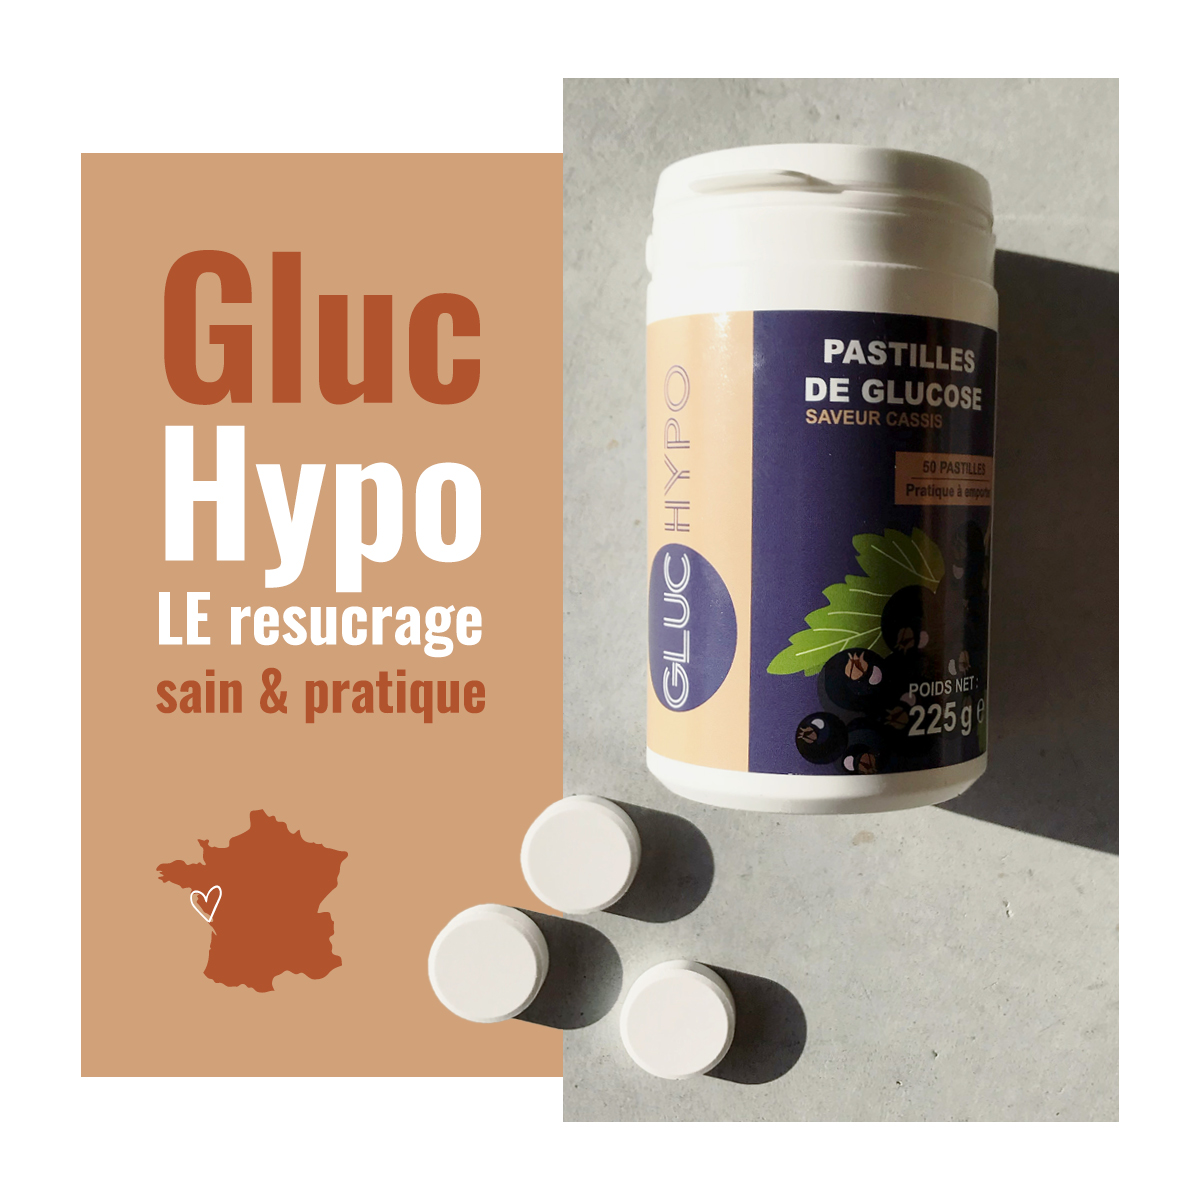 Gluc Hypo, pastille de glucose pour les hypoglycémies